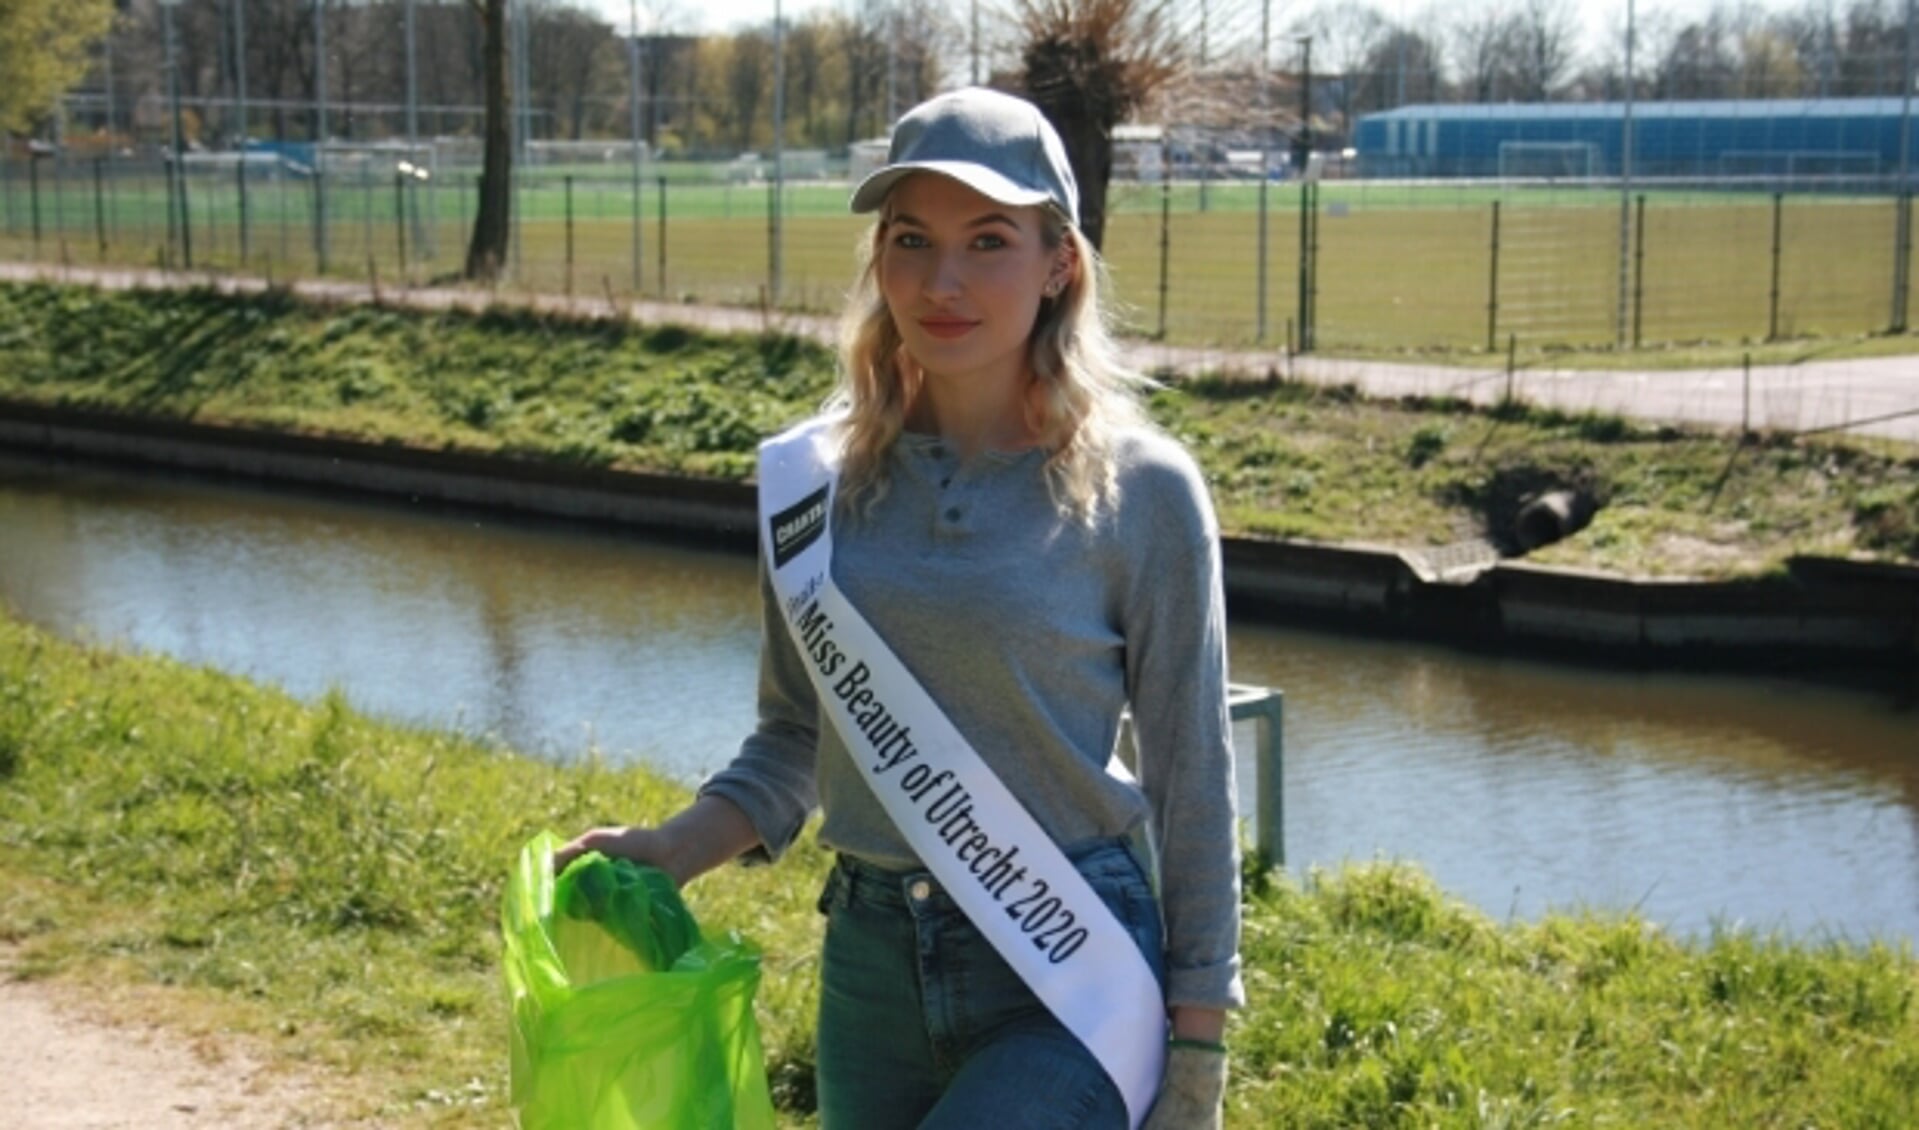 Romy deed onlangs mee aan de landelijke actie Supporter van Schoon. Zij hielp mee om in de omgeving van de Vrekenhorst de boel te schonen. 